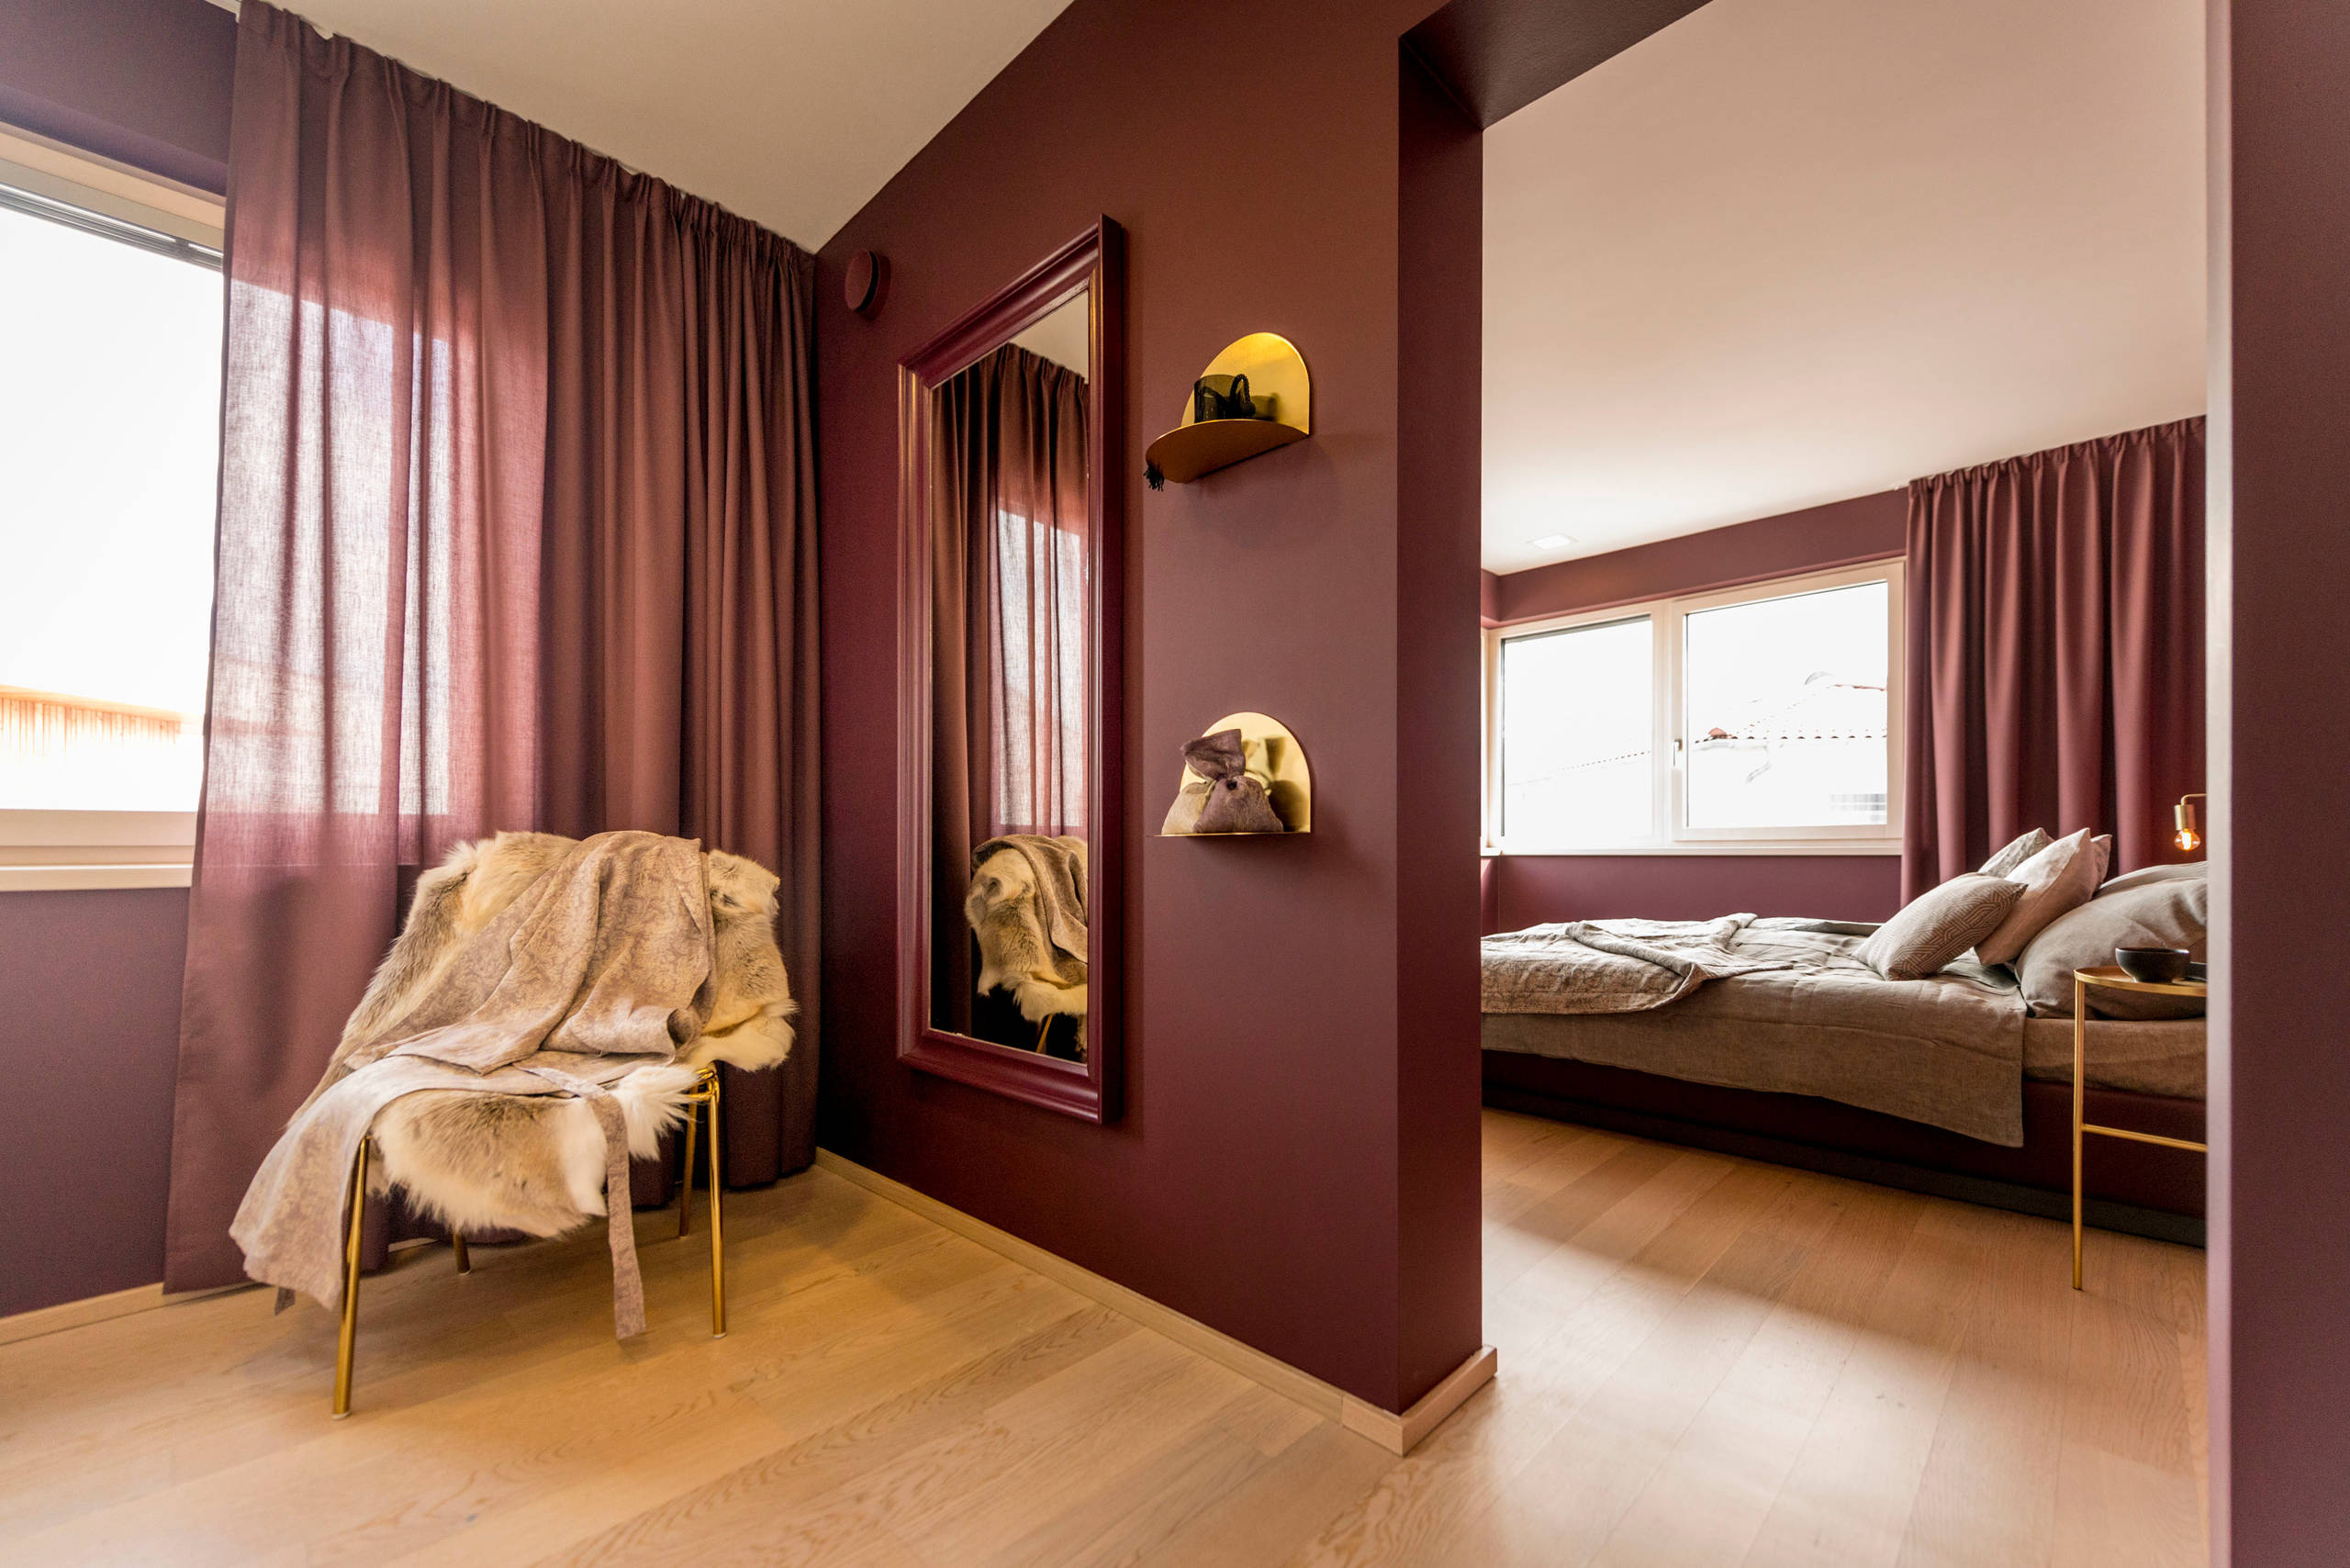 Burgundy Bedroom Ideas And Photos Houzz